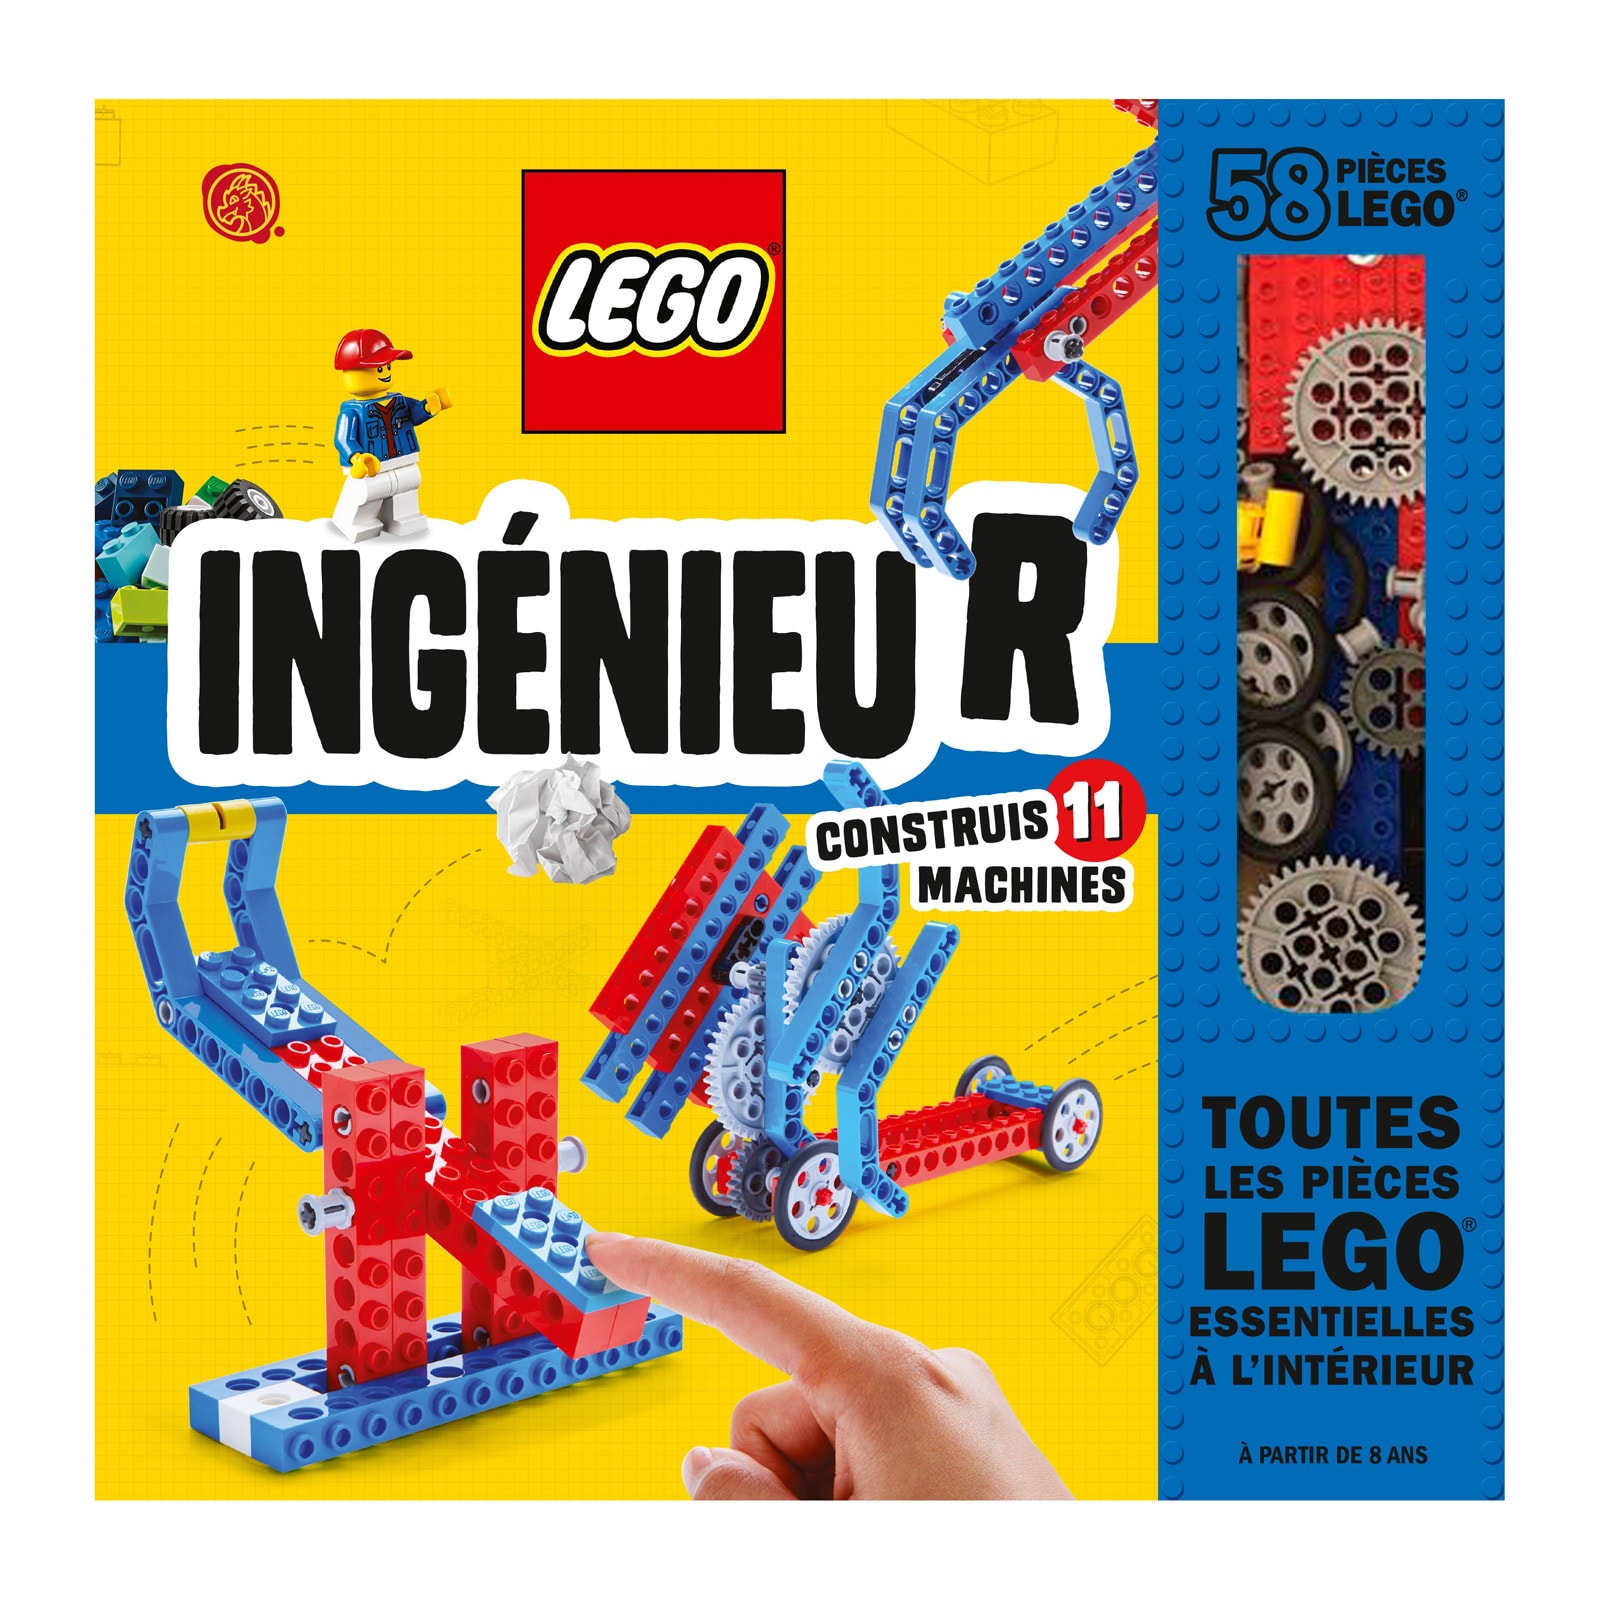 Set de constructions créatives Lego pour enfant de 4 ans à 12 ans - Oxybu